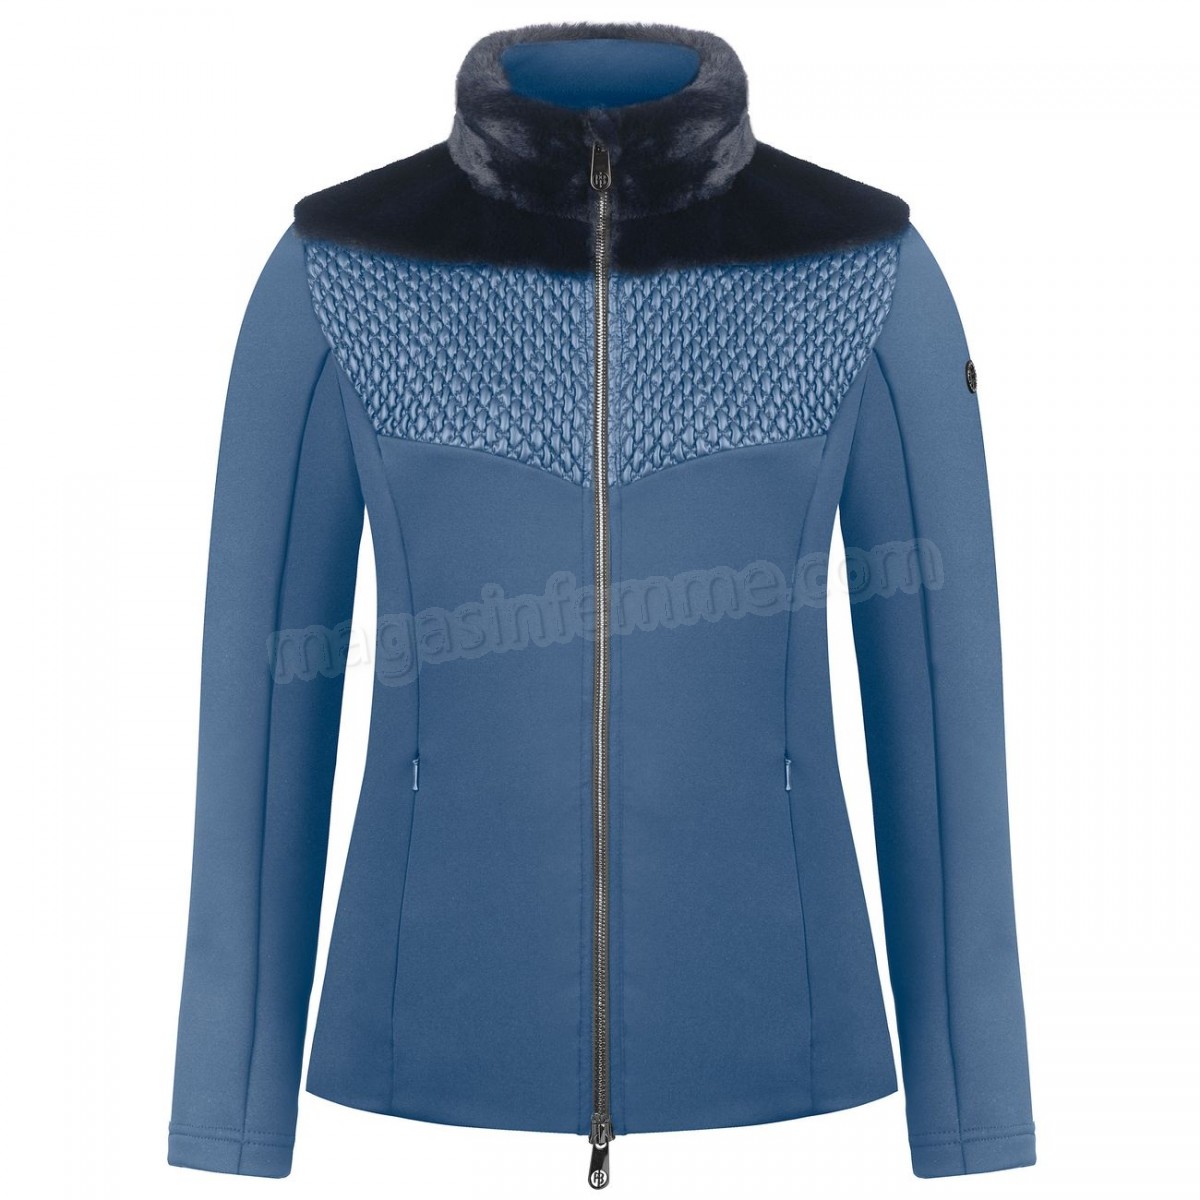 Poivre Blanc-Sports d'hiver femme POIVRE BLANC Veste En Polaire Poivre Blanc Hybrid Stretch Fleece Jacket 1600 Multico Blue Femme en solde - -1